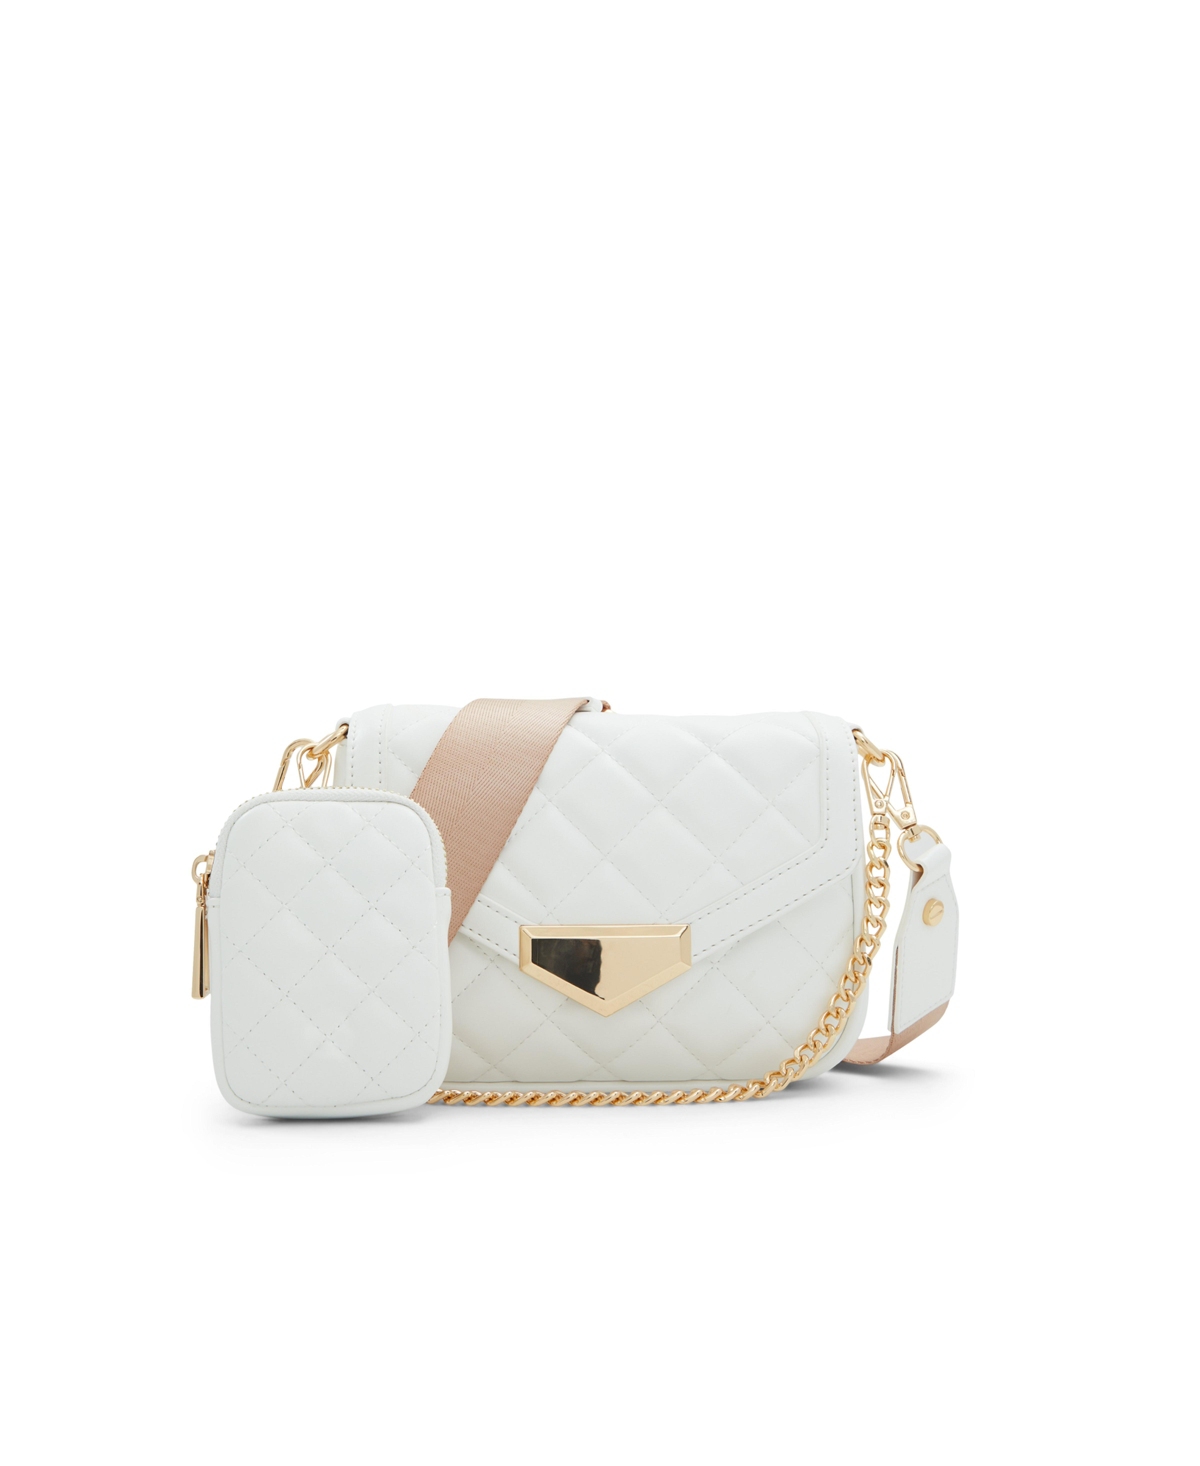 Miraewinx Women's City Handbags - White